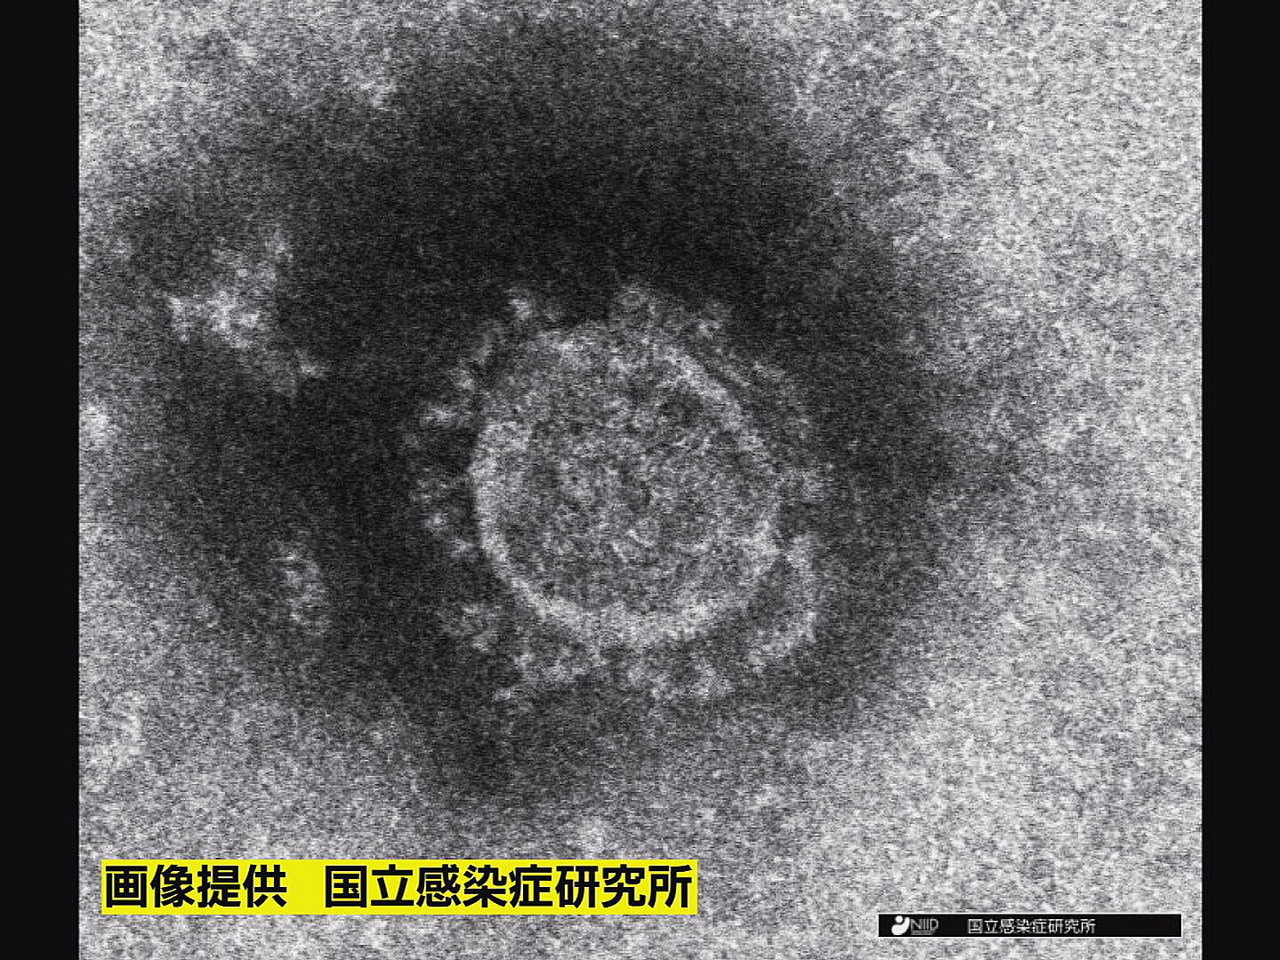 岐阜県は２６日、新型コロナウイルスの新規感染者が ５３４人、１人の死亡が確認され...